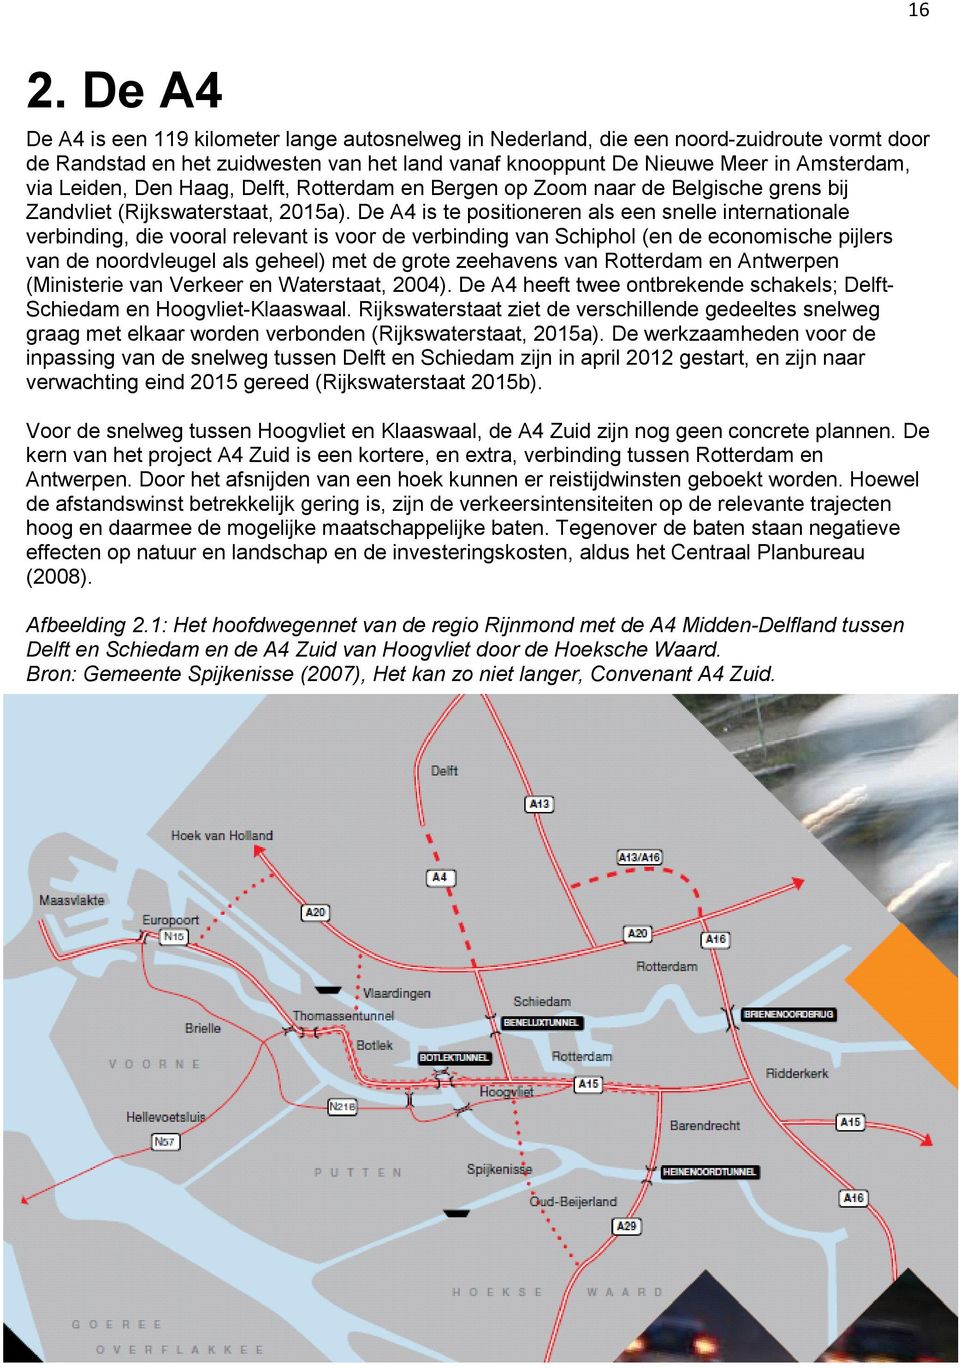 De A4 is te positioneren als een snelle internationale verbinding, die vooral relevant is voor de verbinding van Schiphol (en de economische pijlers van de noordvleugel als geheel) met de grote